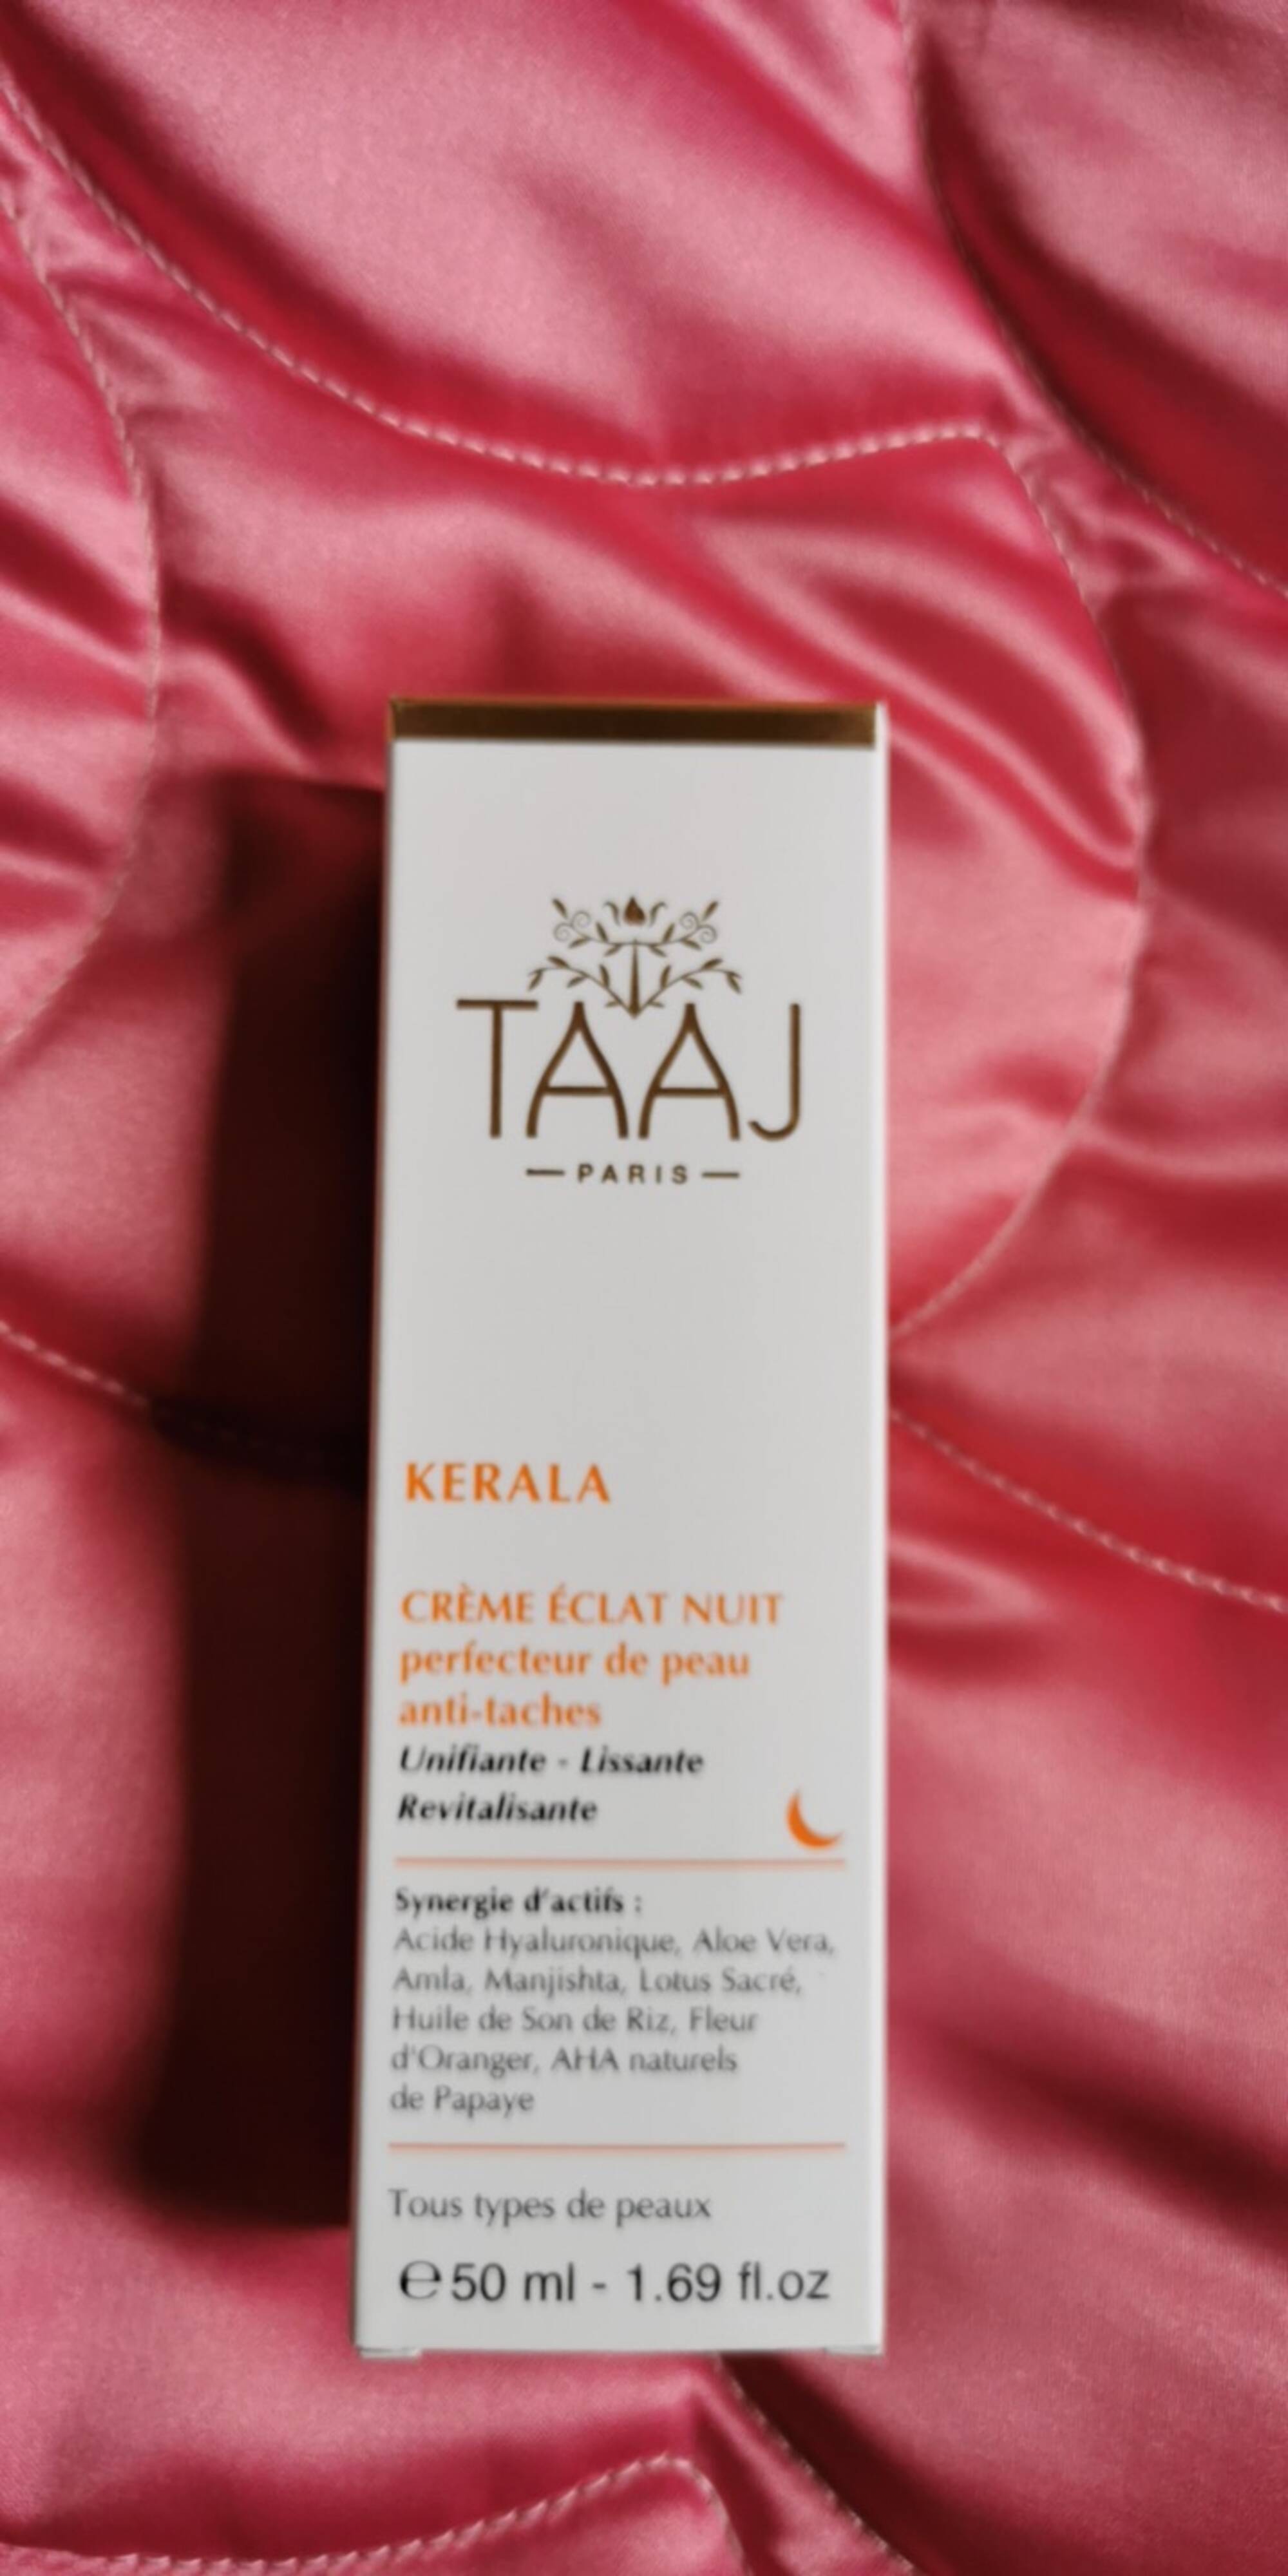 TAAJ - Crème éclat nuit perfecteur de peau anti-taches